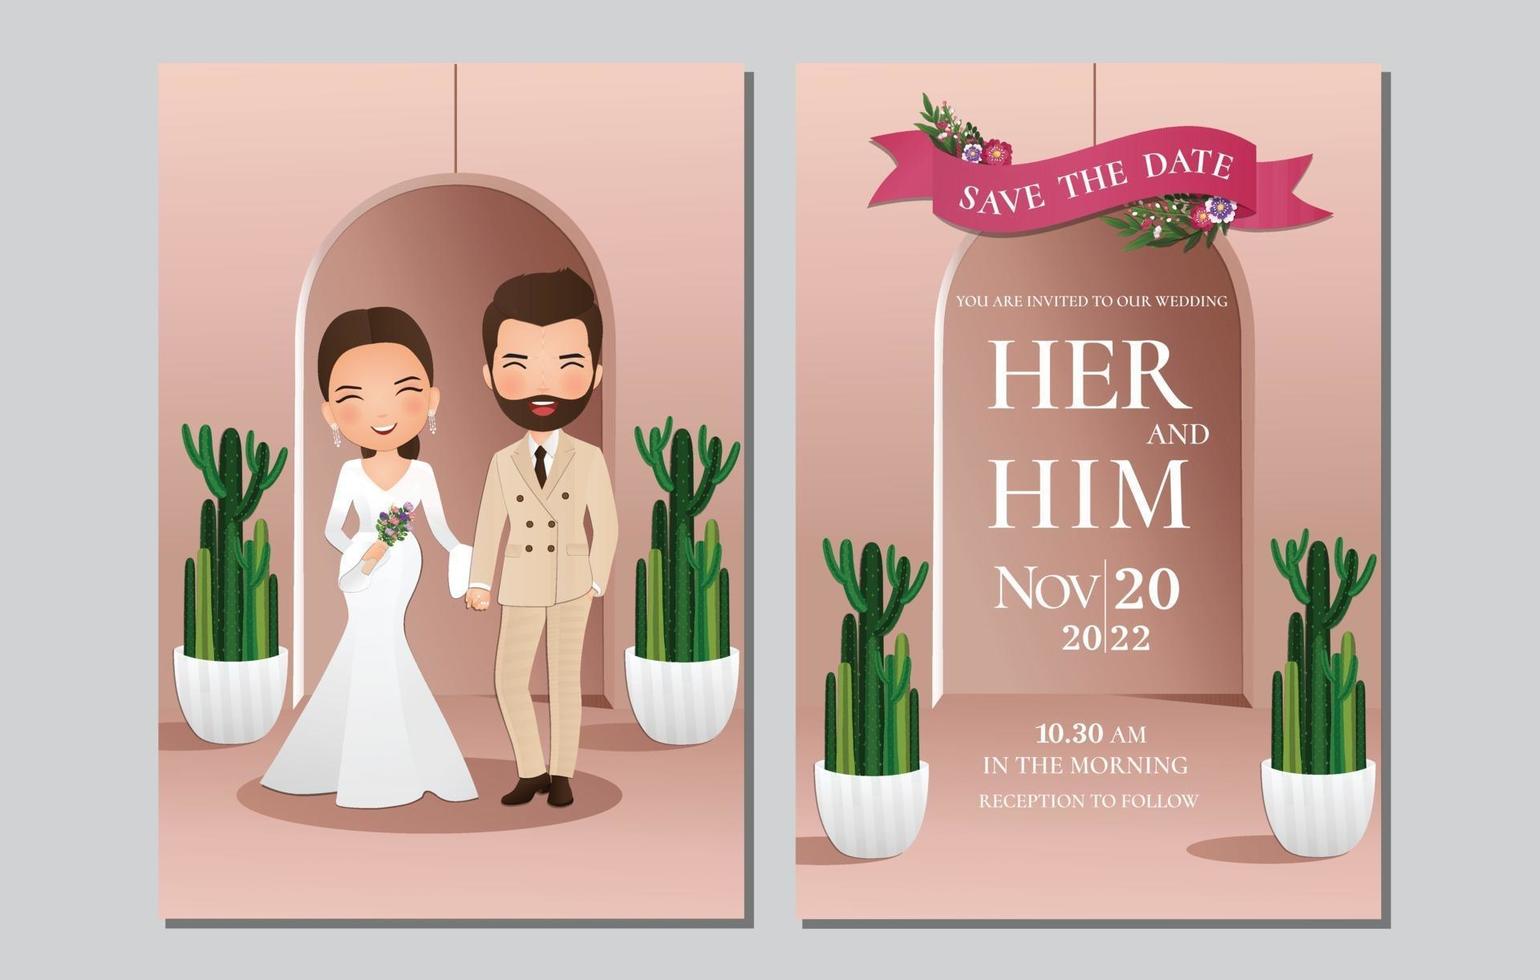 Tarjeta de invitación de boda la novia y el novio personaje de dibujos animados linda pareja con cactus verde y fondo rosa claro.Ilustración de vector